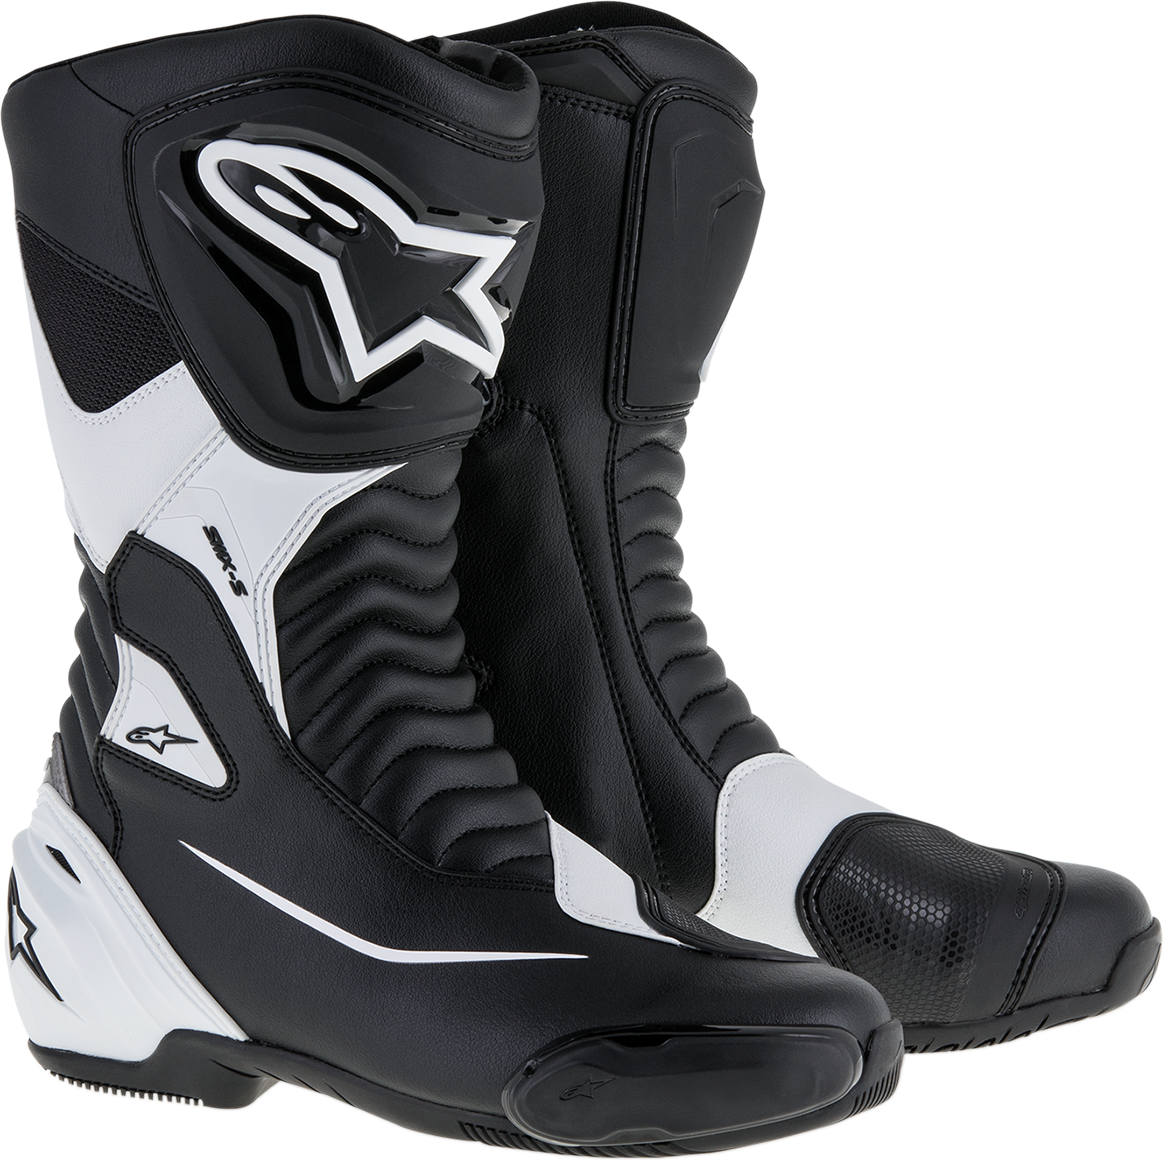 ALPINESTARS SMX-S Boots - Black/White - US 14 / EU 50 2223517-12-50